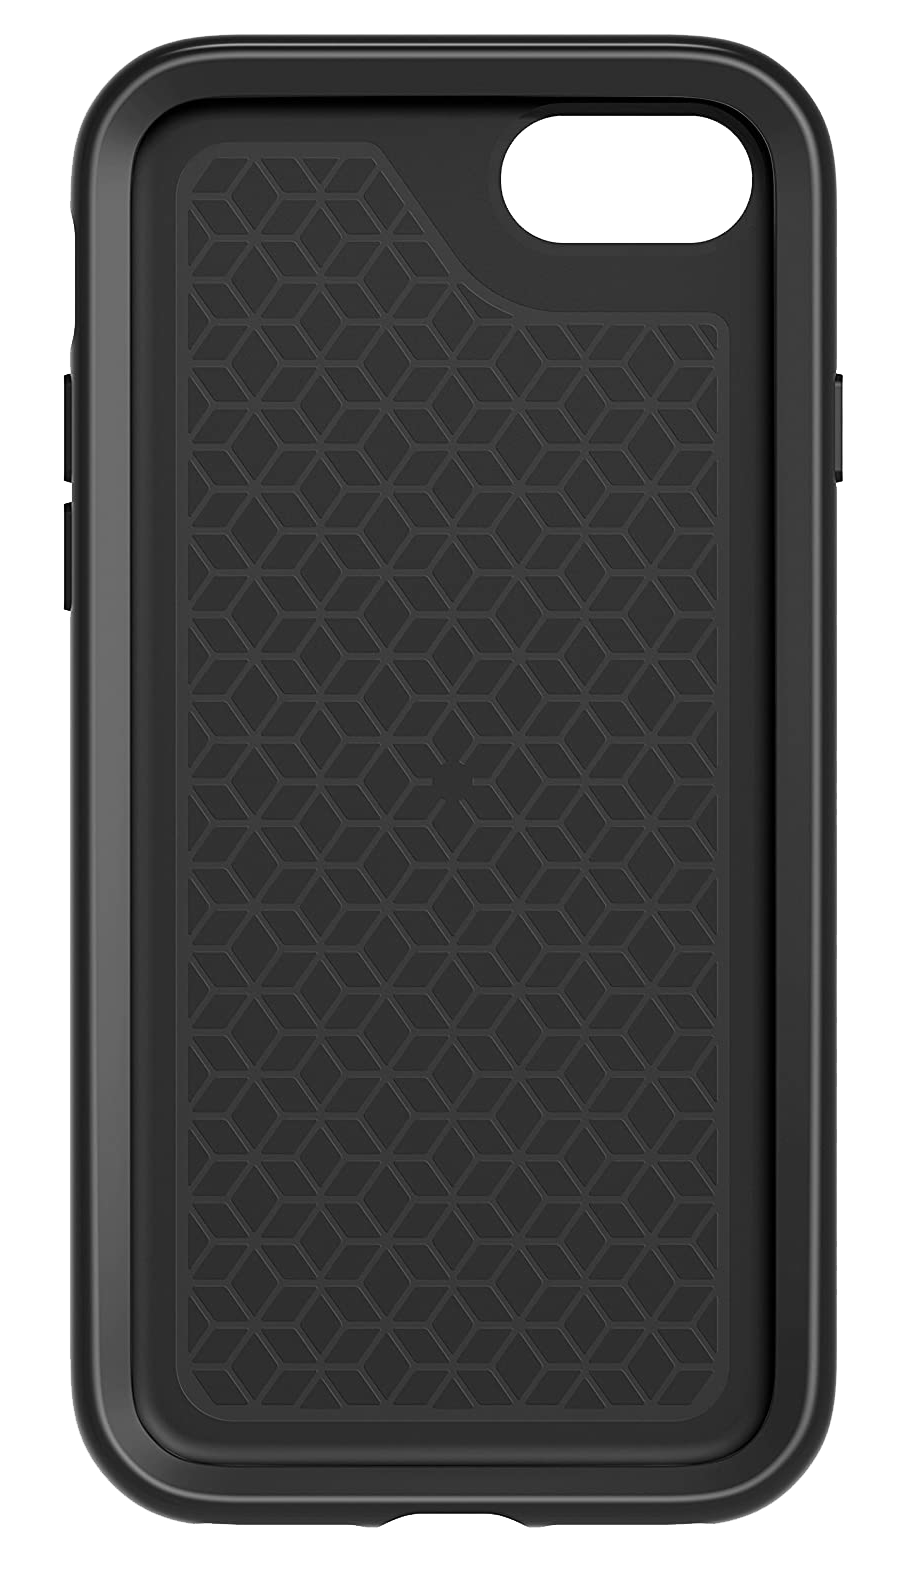 Otterbox Strada iPhone 7/8 (78-51131) schwarz - Onhe Vertrag